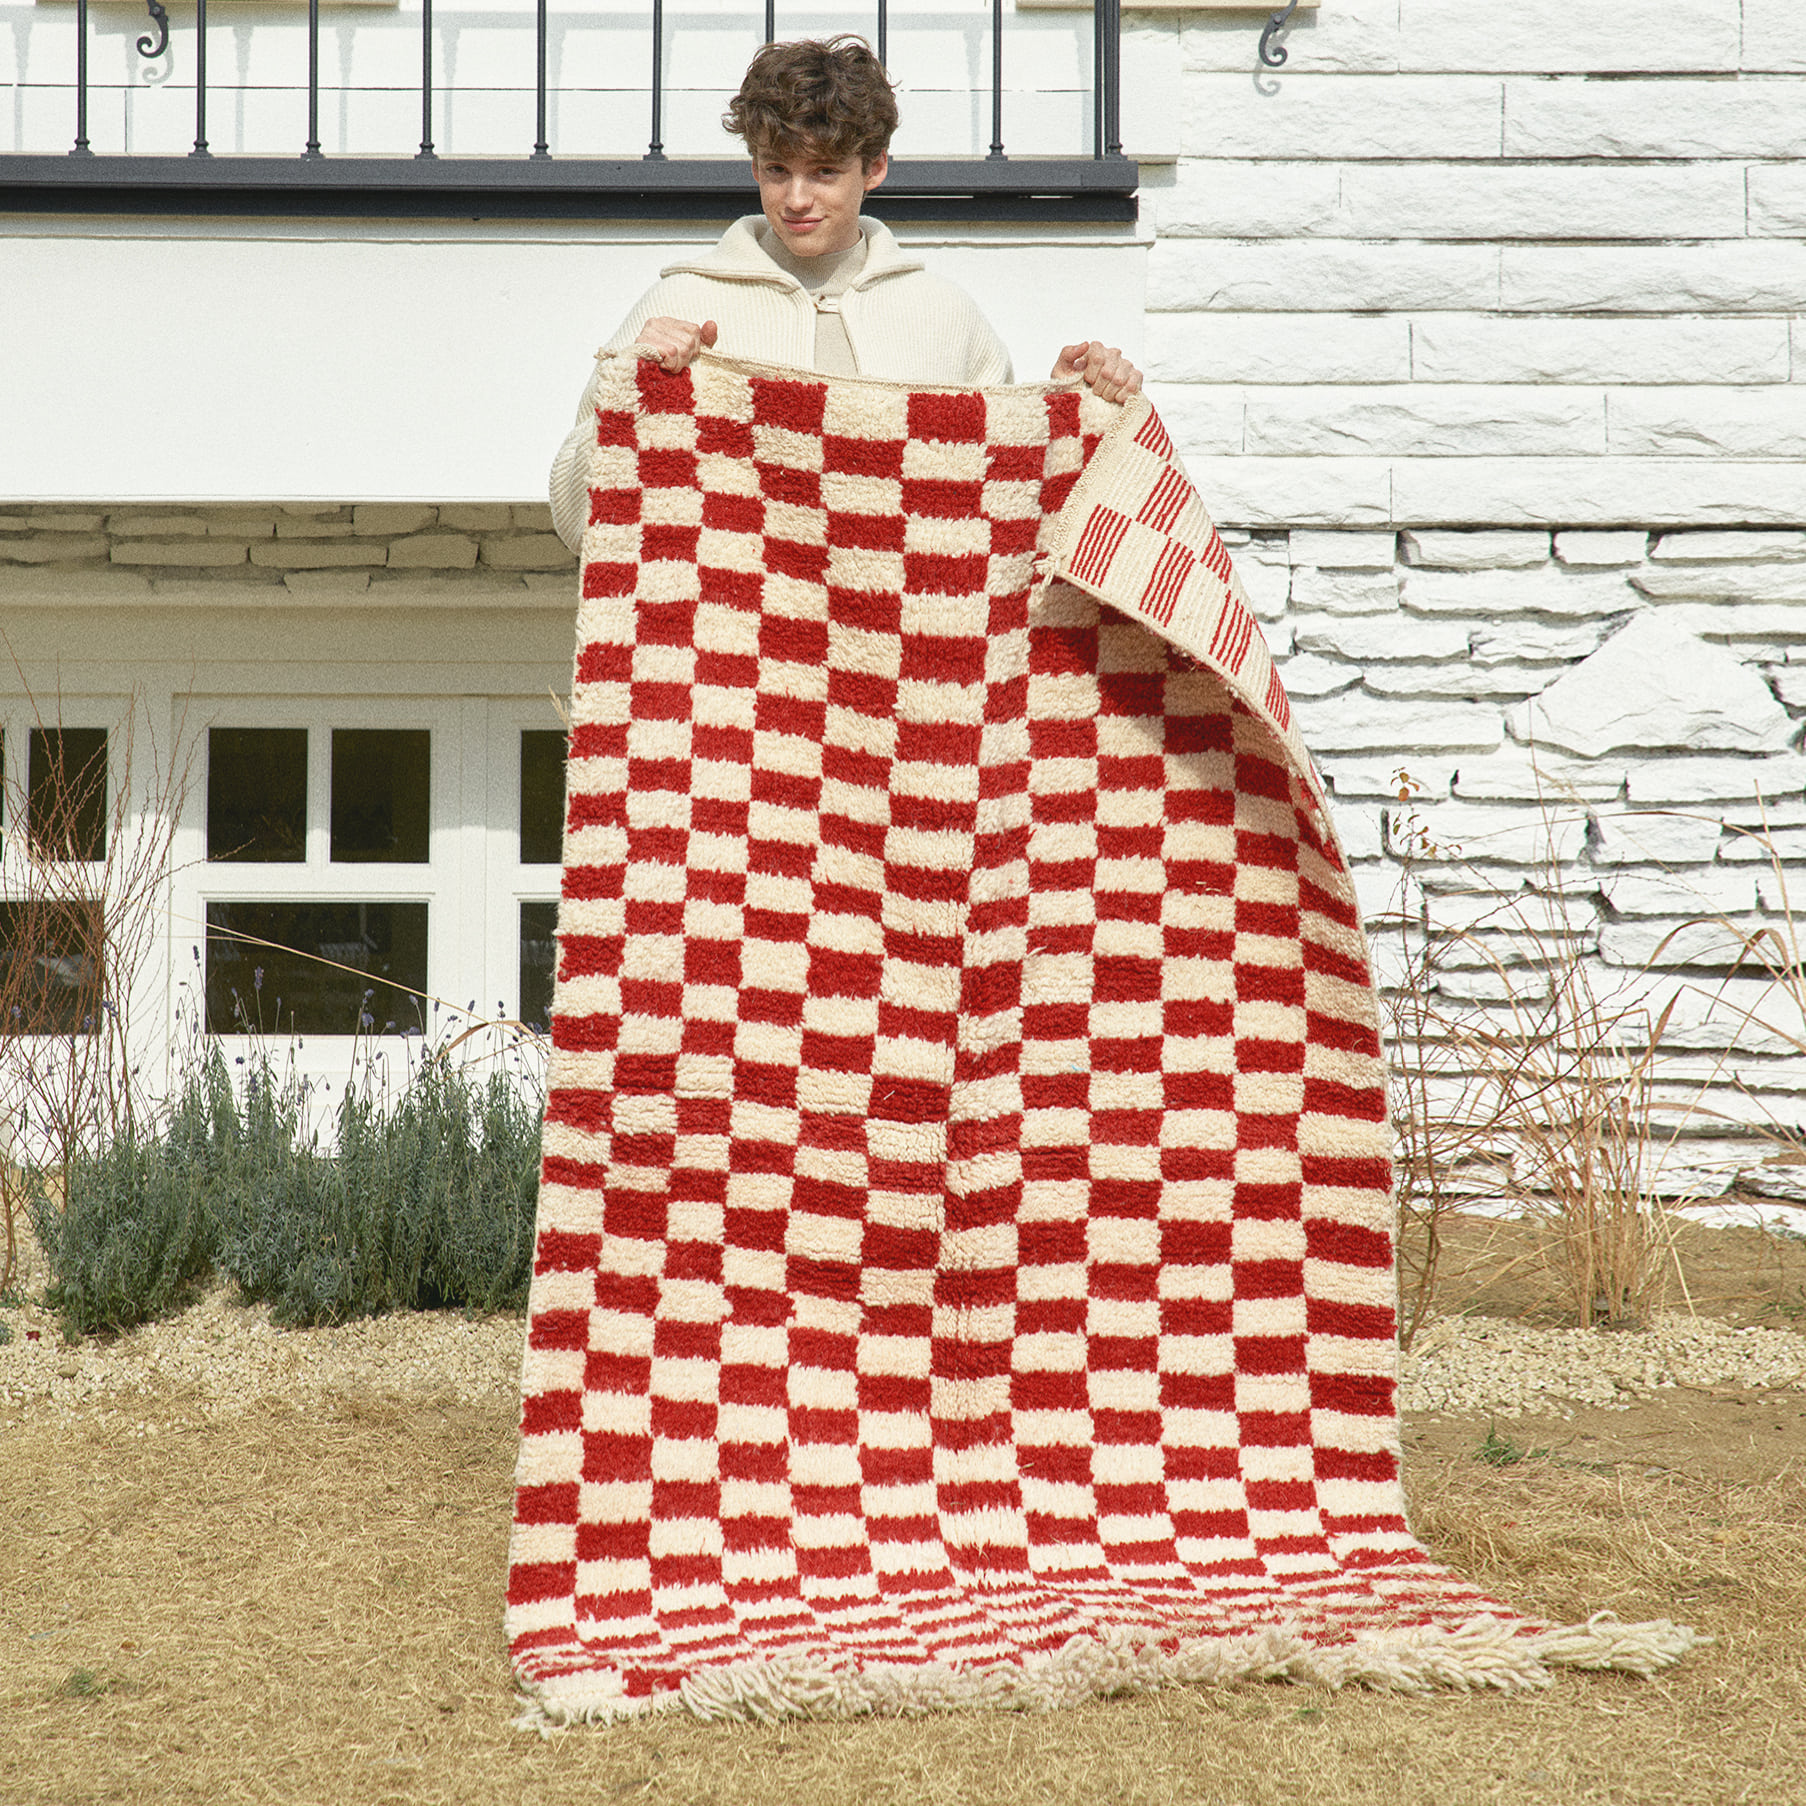 Moroccan rug checker board red